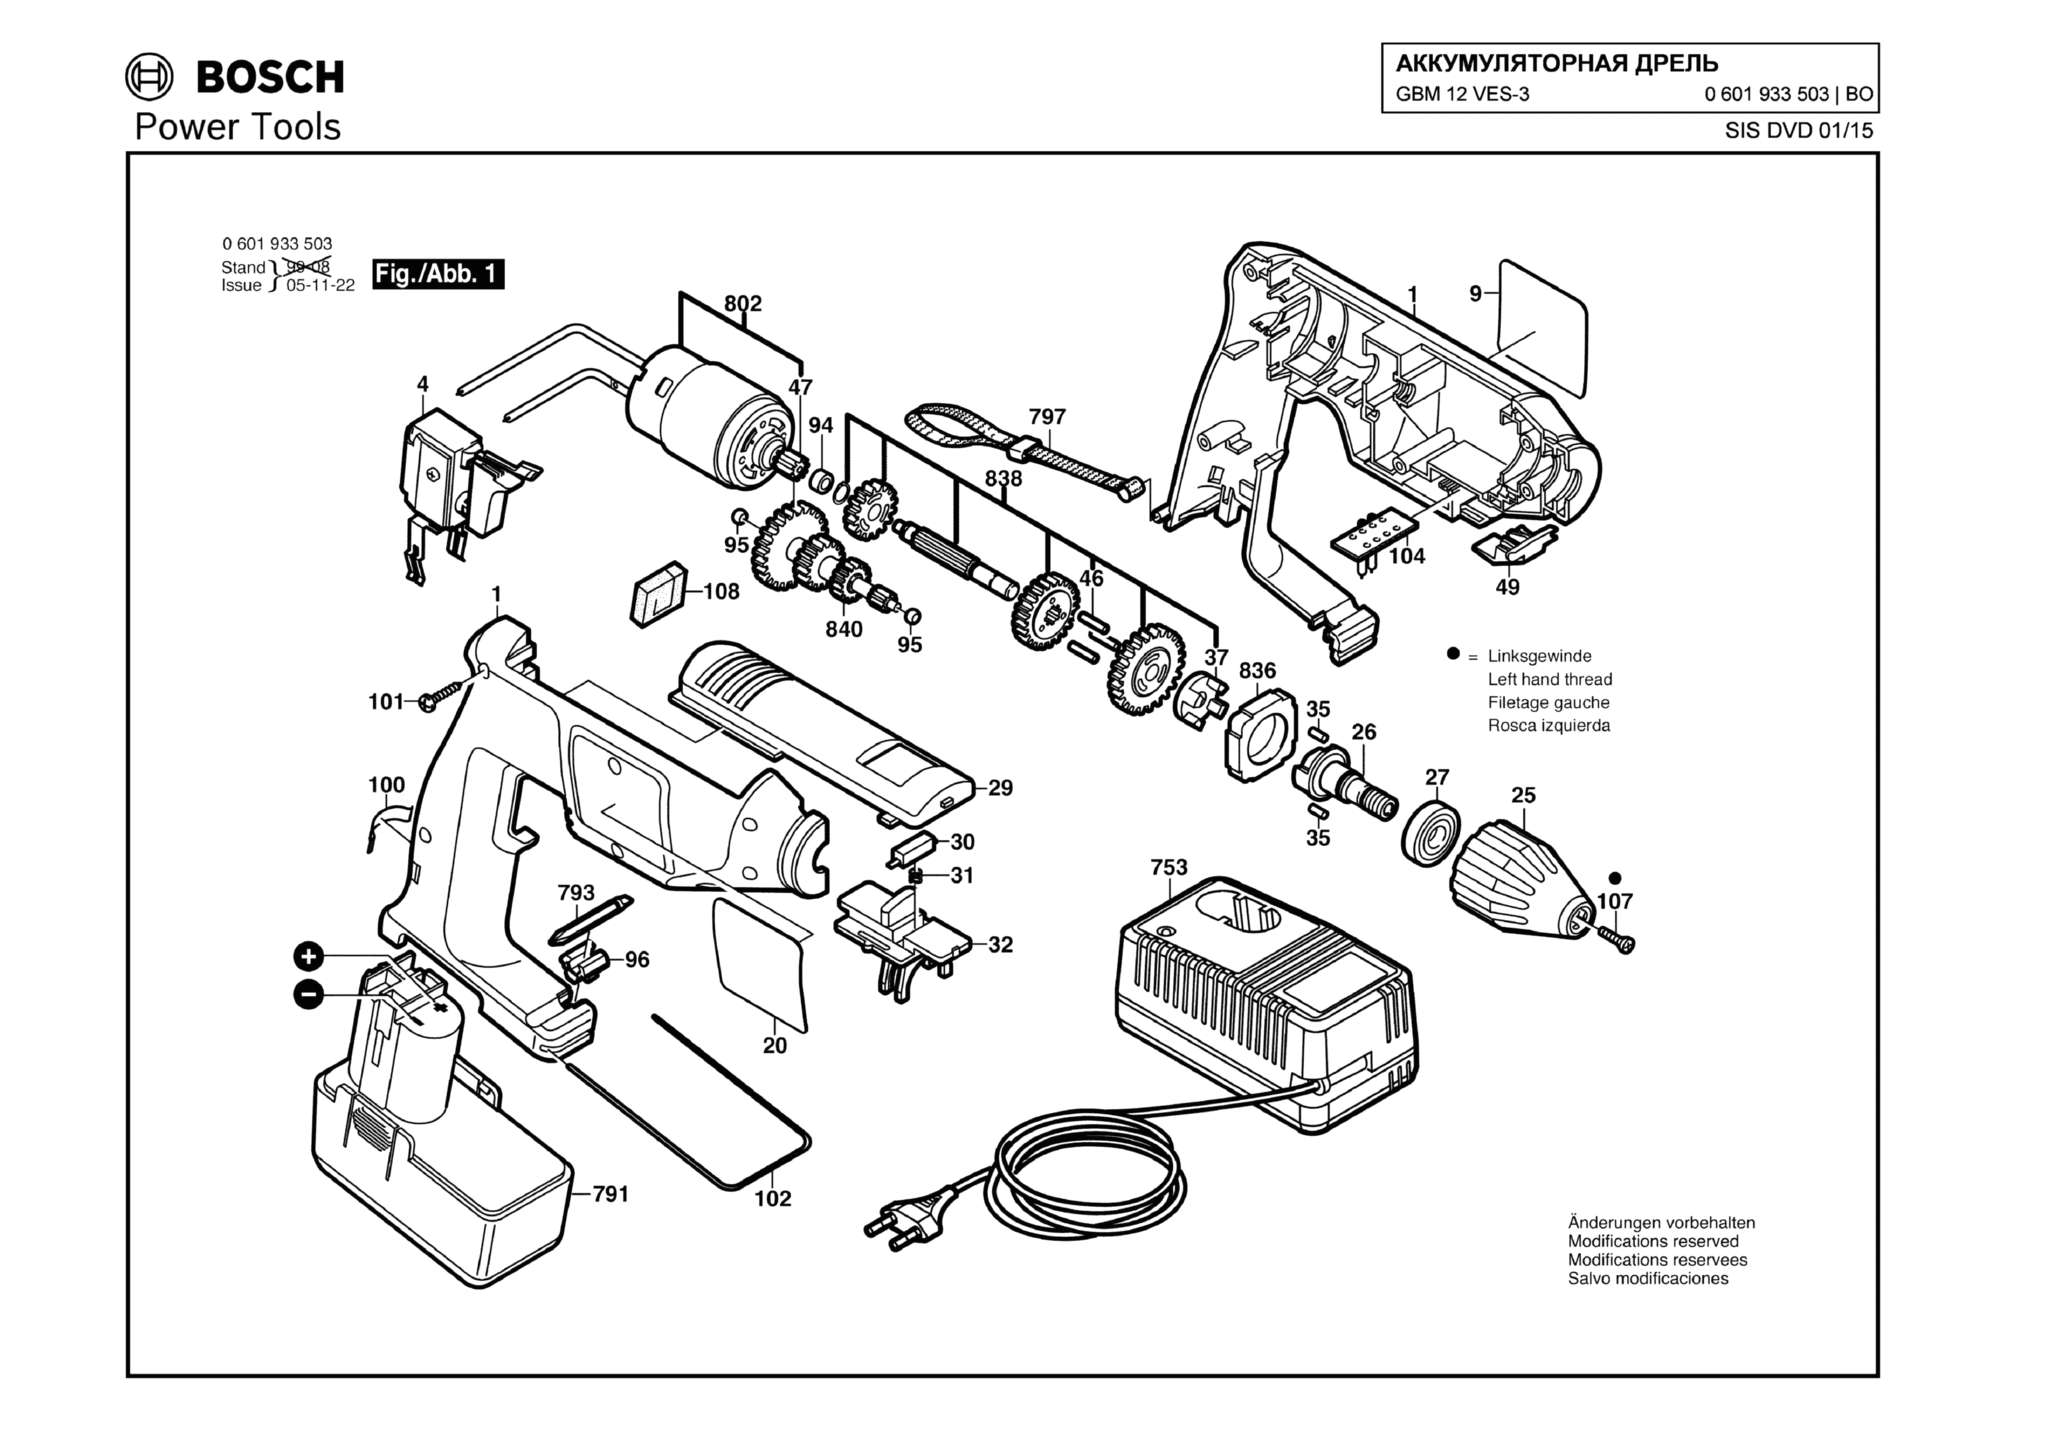 Запчасти, схема и деталировка Bosch GBM 12 VES-3 (ТИП 0601933503)